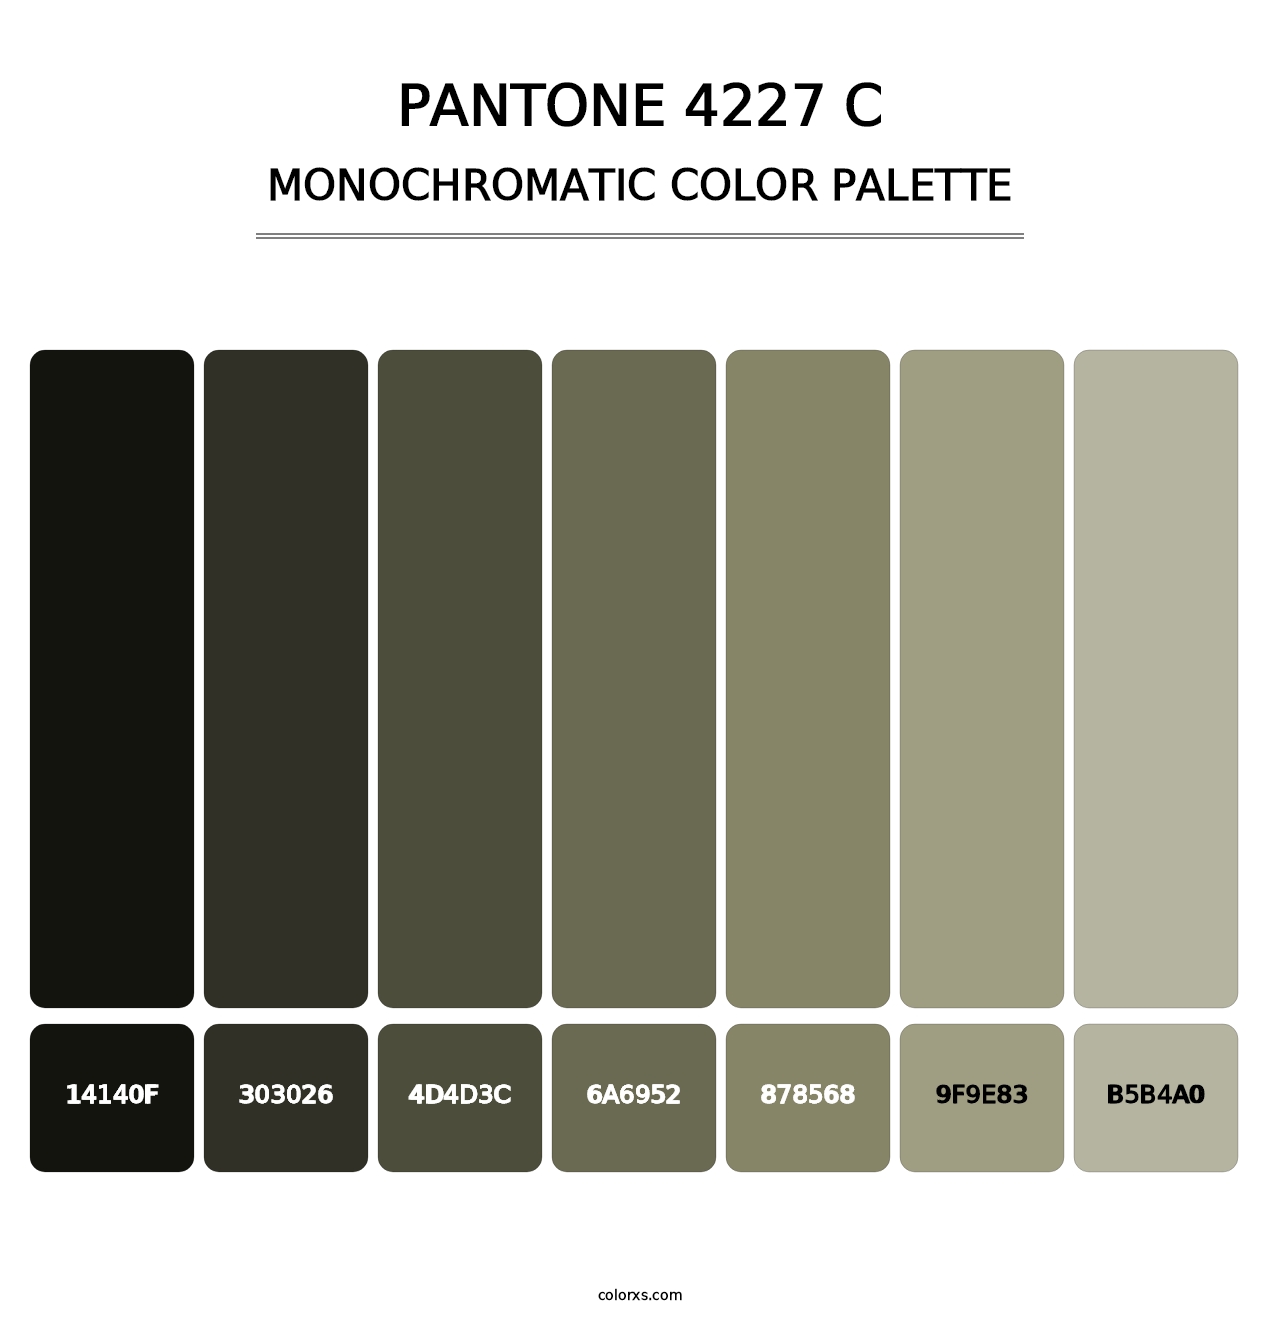 PANTONE 4227 C - Monochromatic Color Palette